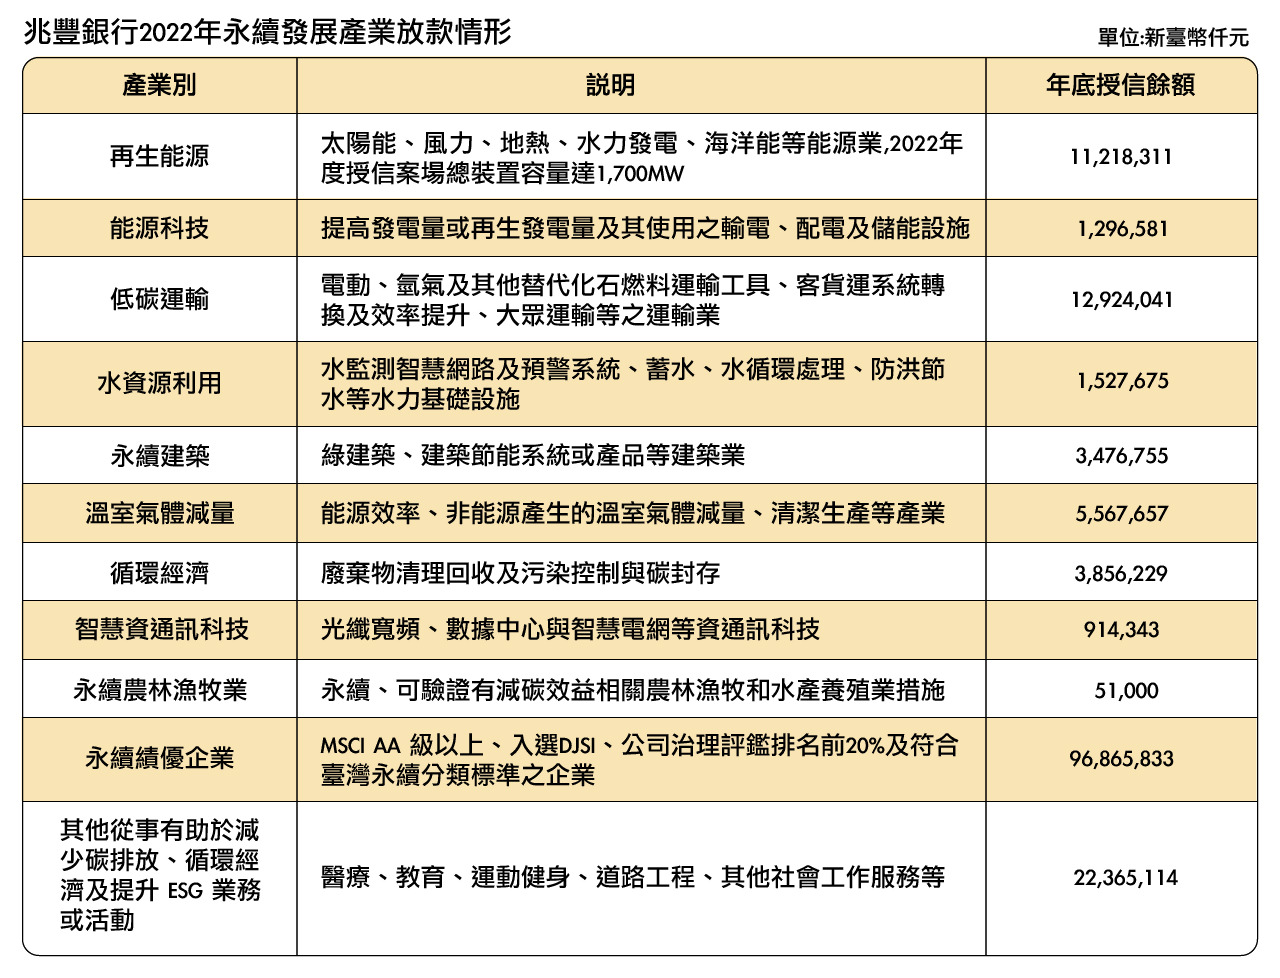 兆豐銀行2022年永續發展產業放款情形_圖表